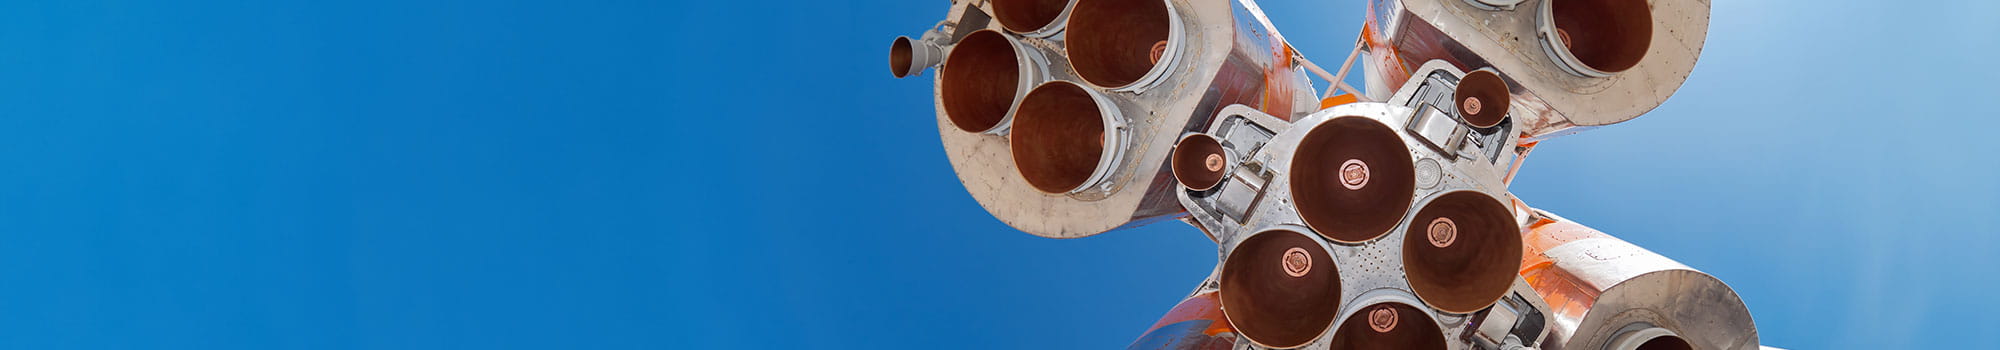 Details of space rocket engine against blue sky background